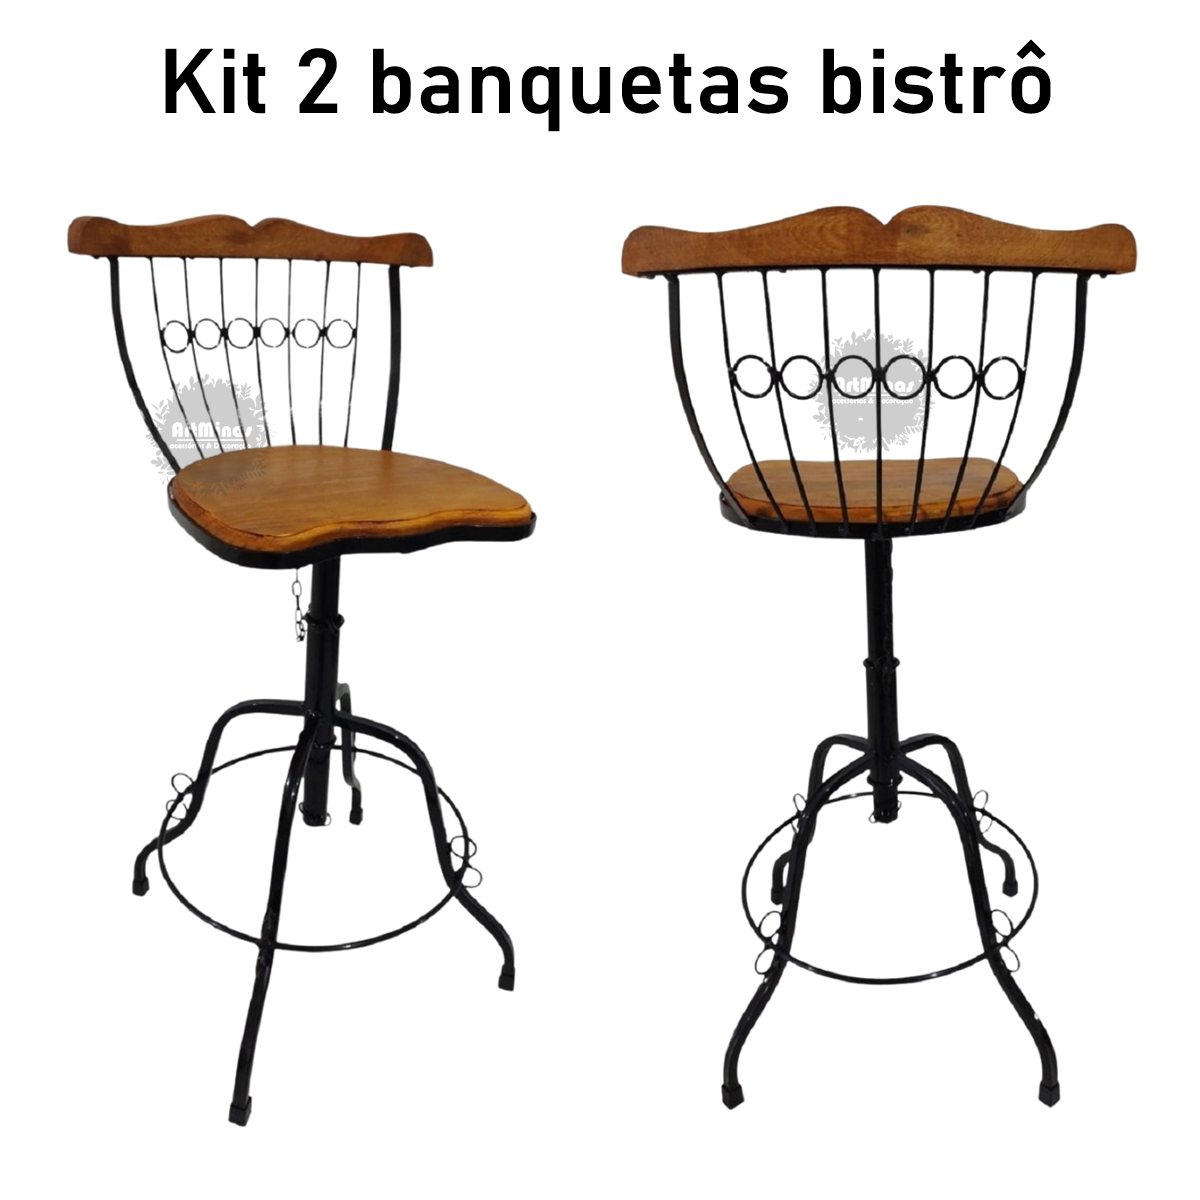 kit 2 banquetas giratória e regulável artesanal ferro madeira - 4